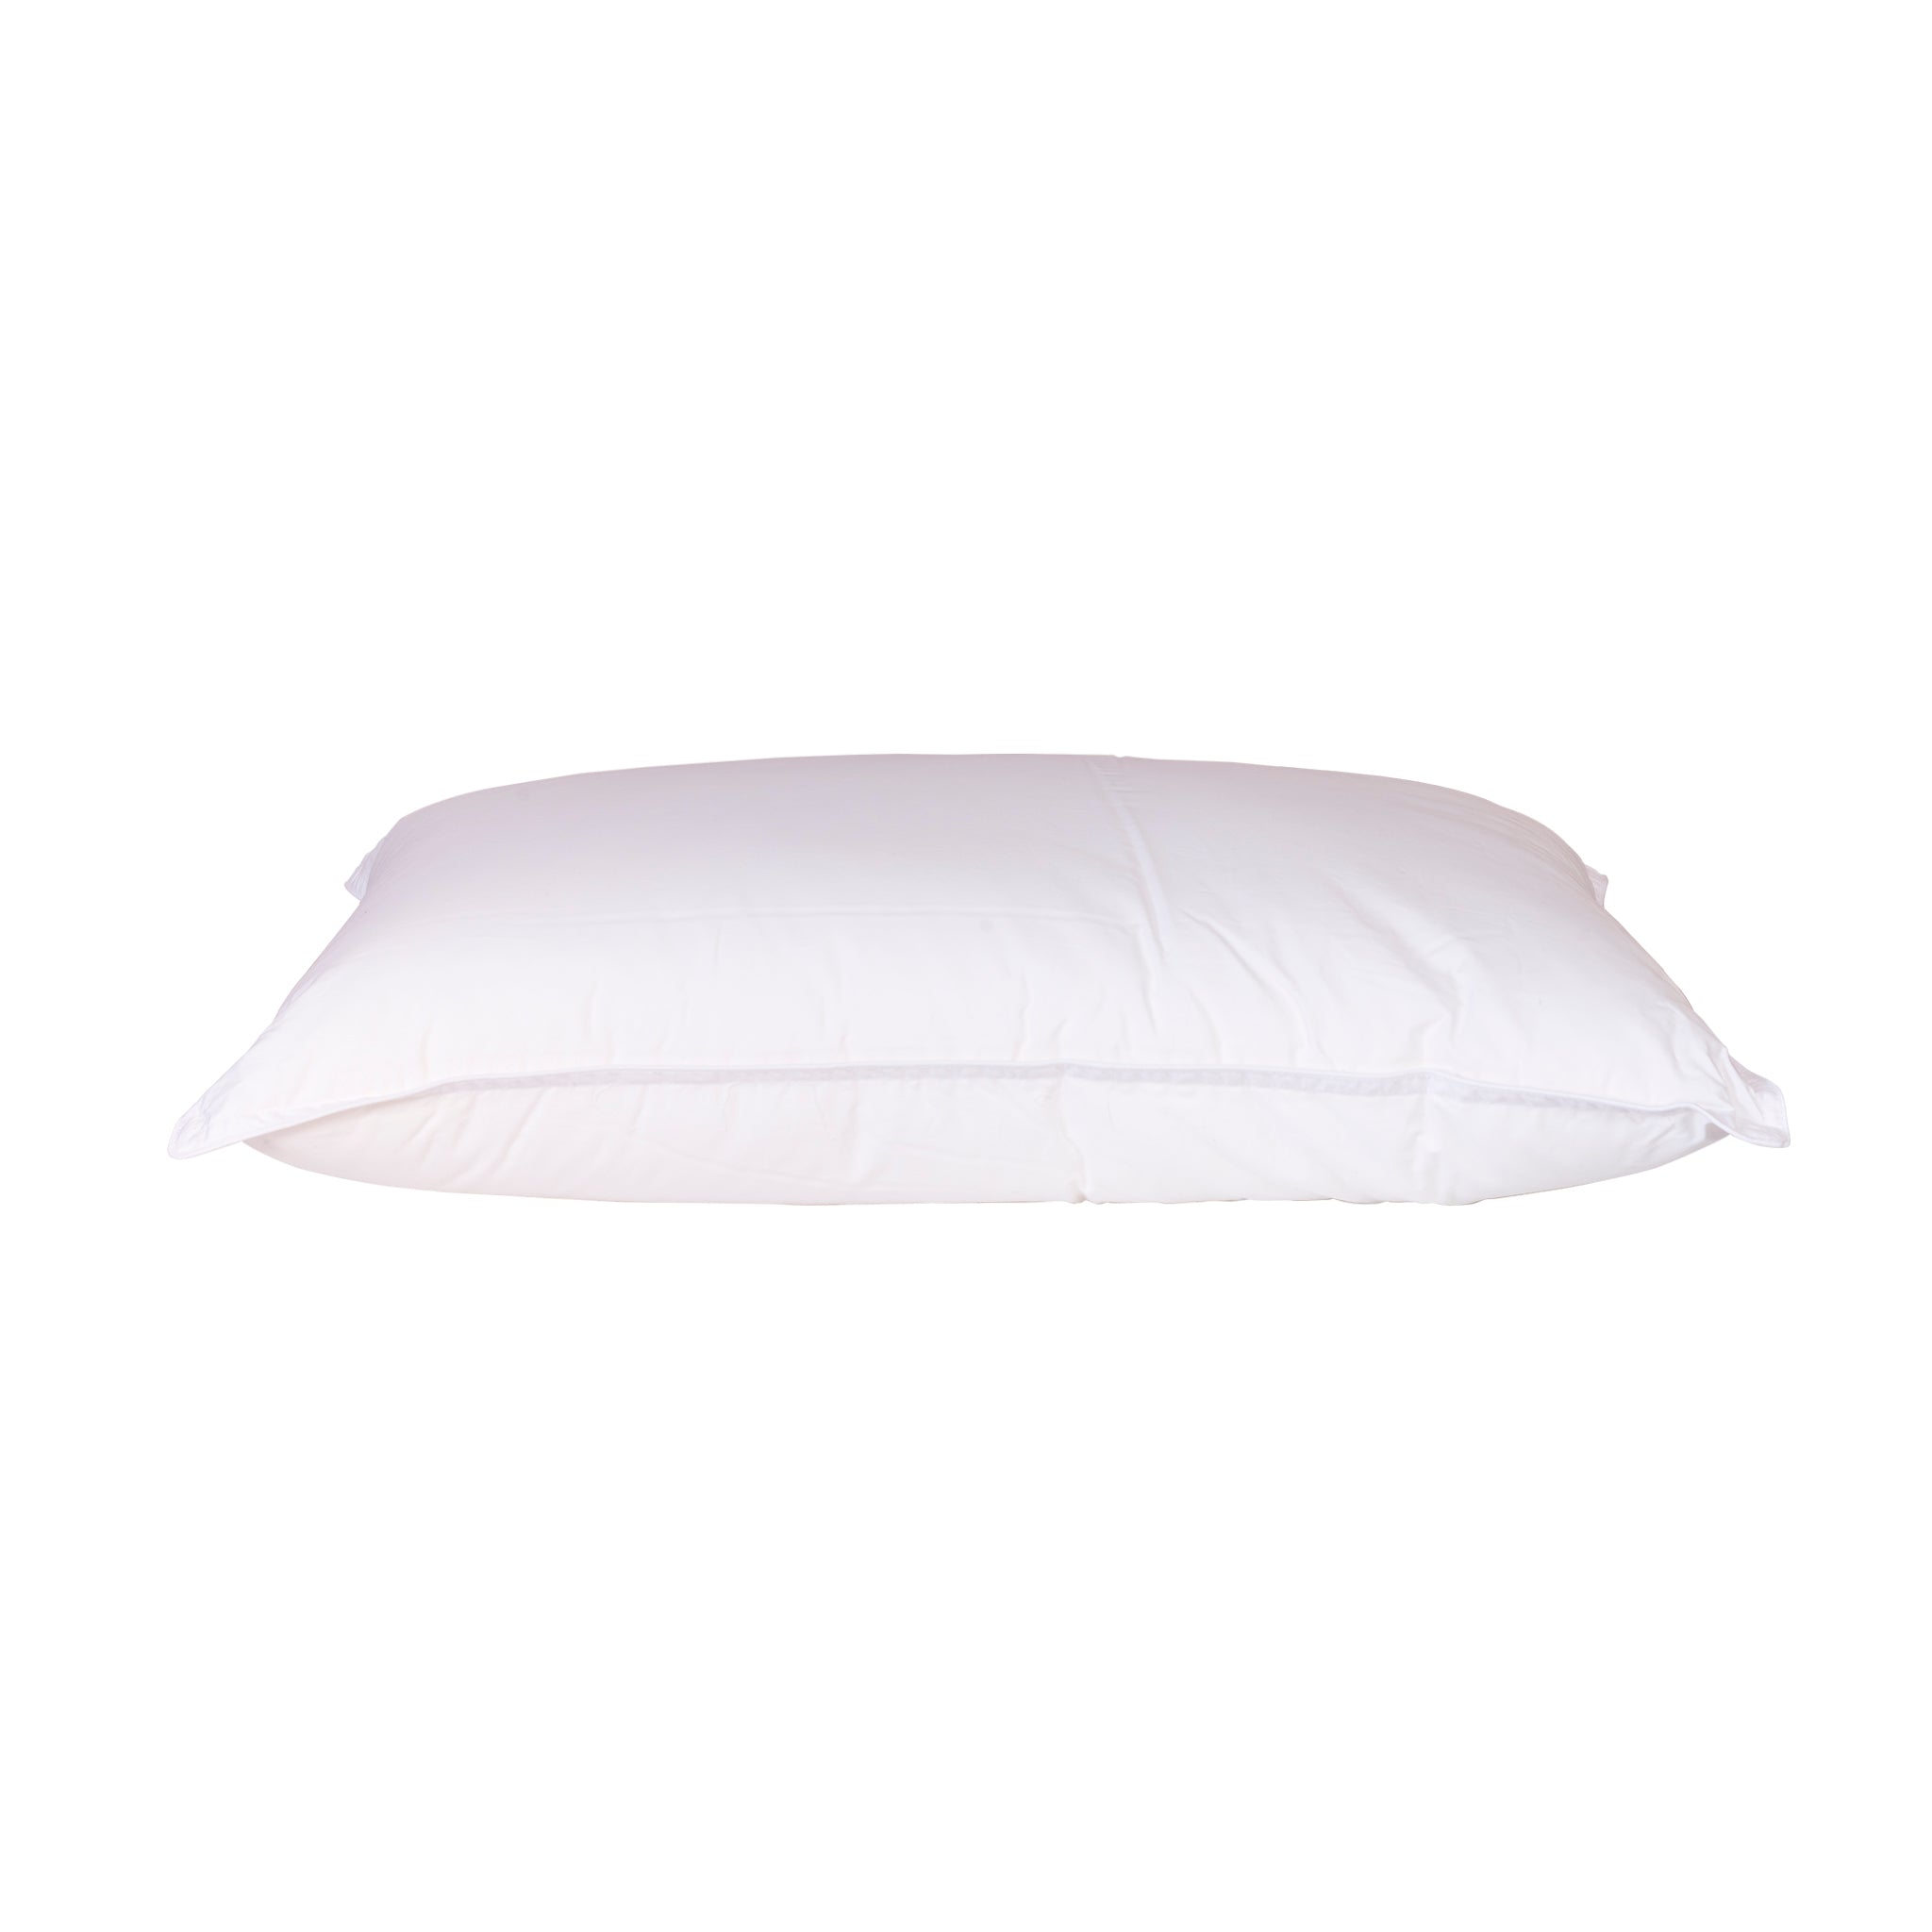 Gel Luxe Medium Firm Pillow